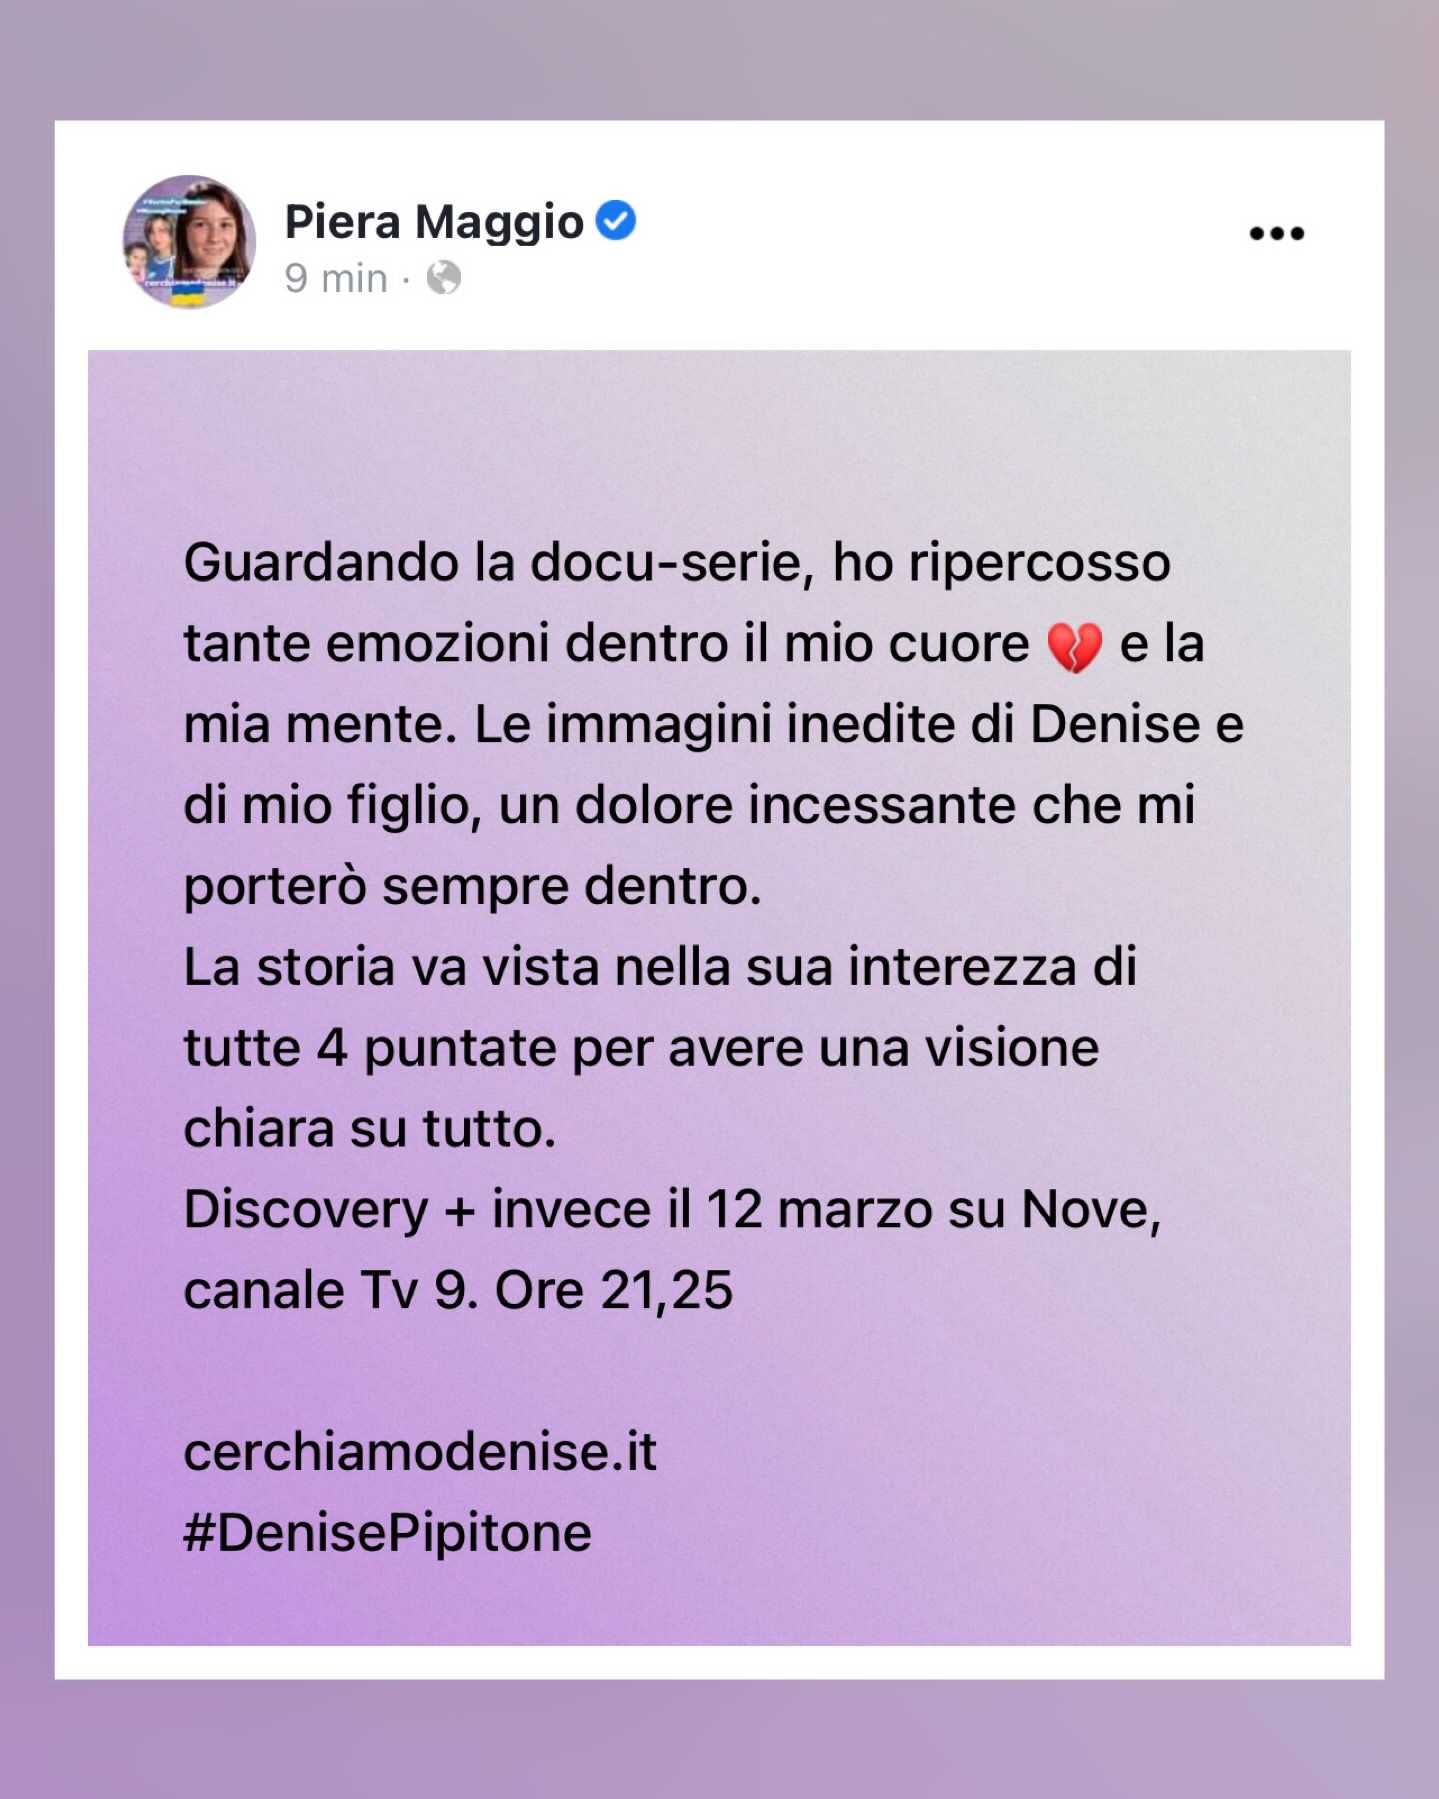 Piera Maggio: Tante emozioni guardando la docu-serie